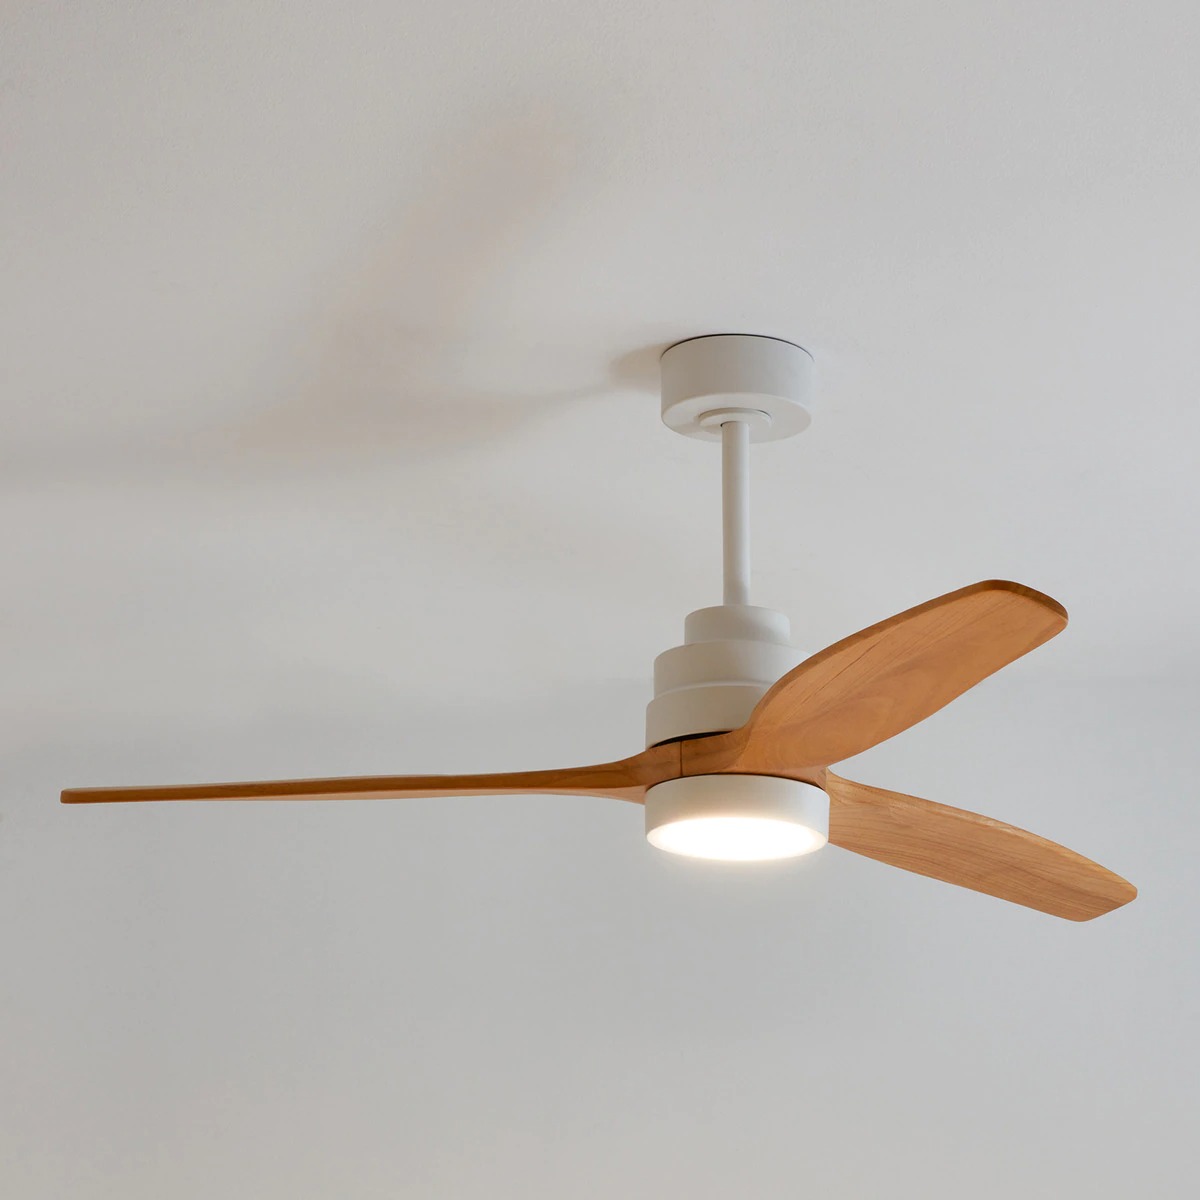 Ventilateur de plafond avec éclairage LED blanc et bois Son Bou DC · Moteur · El Corte Inglés